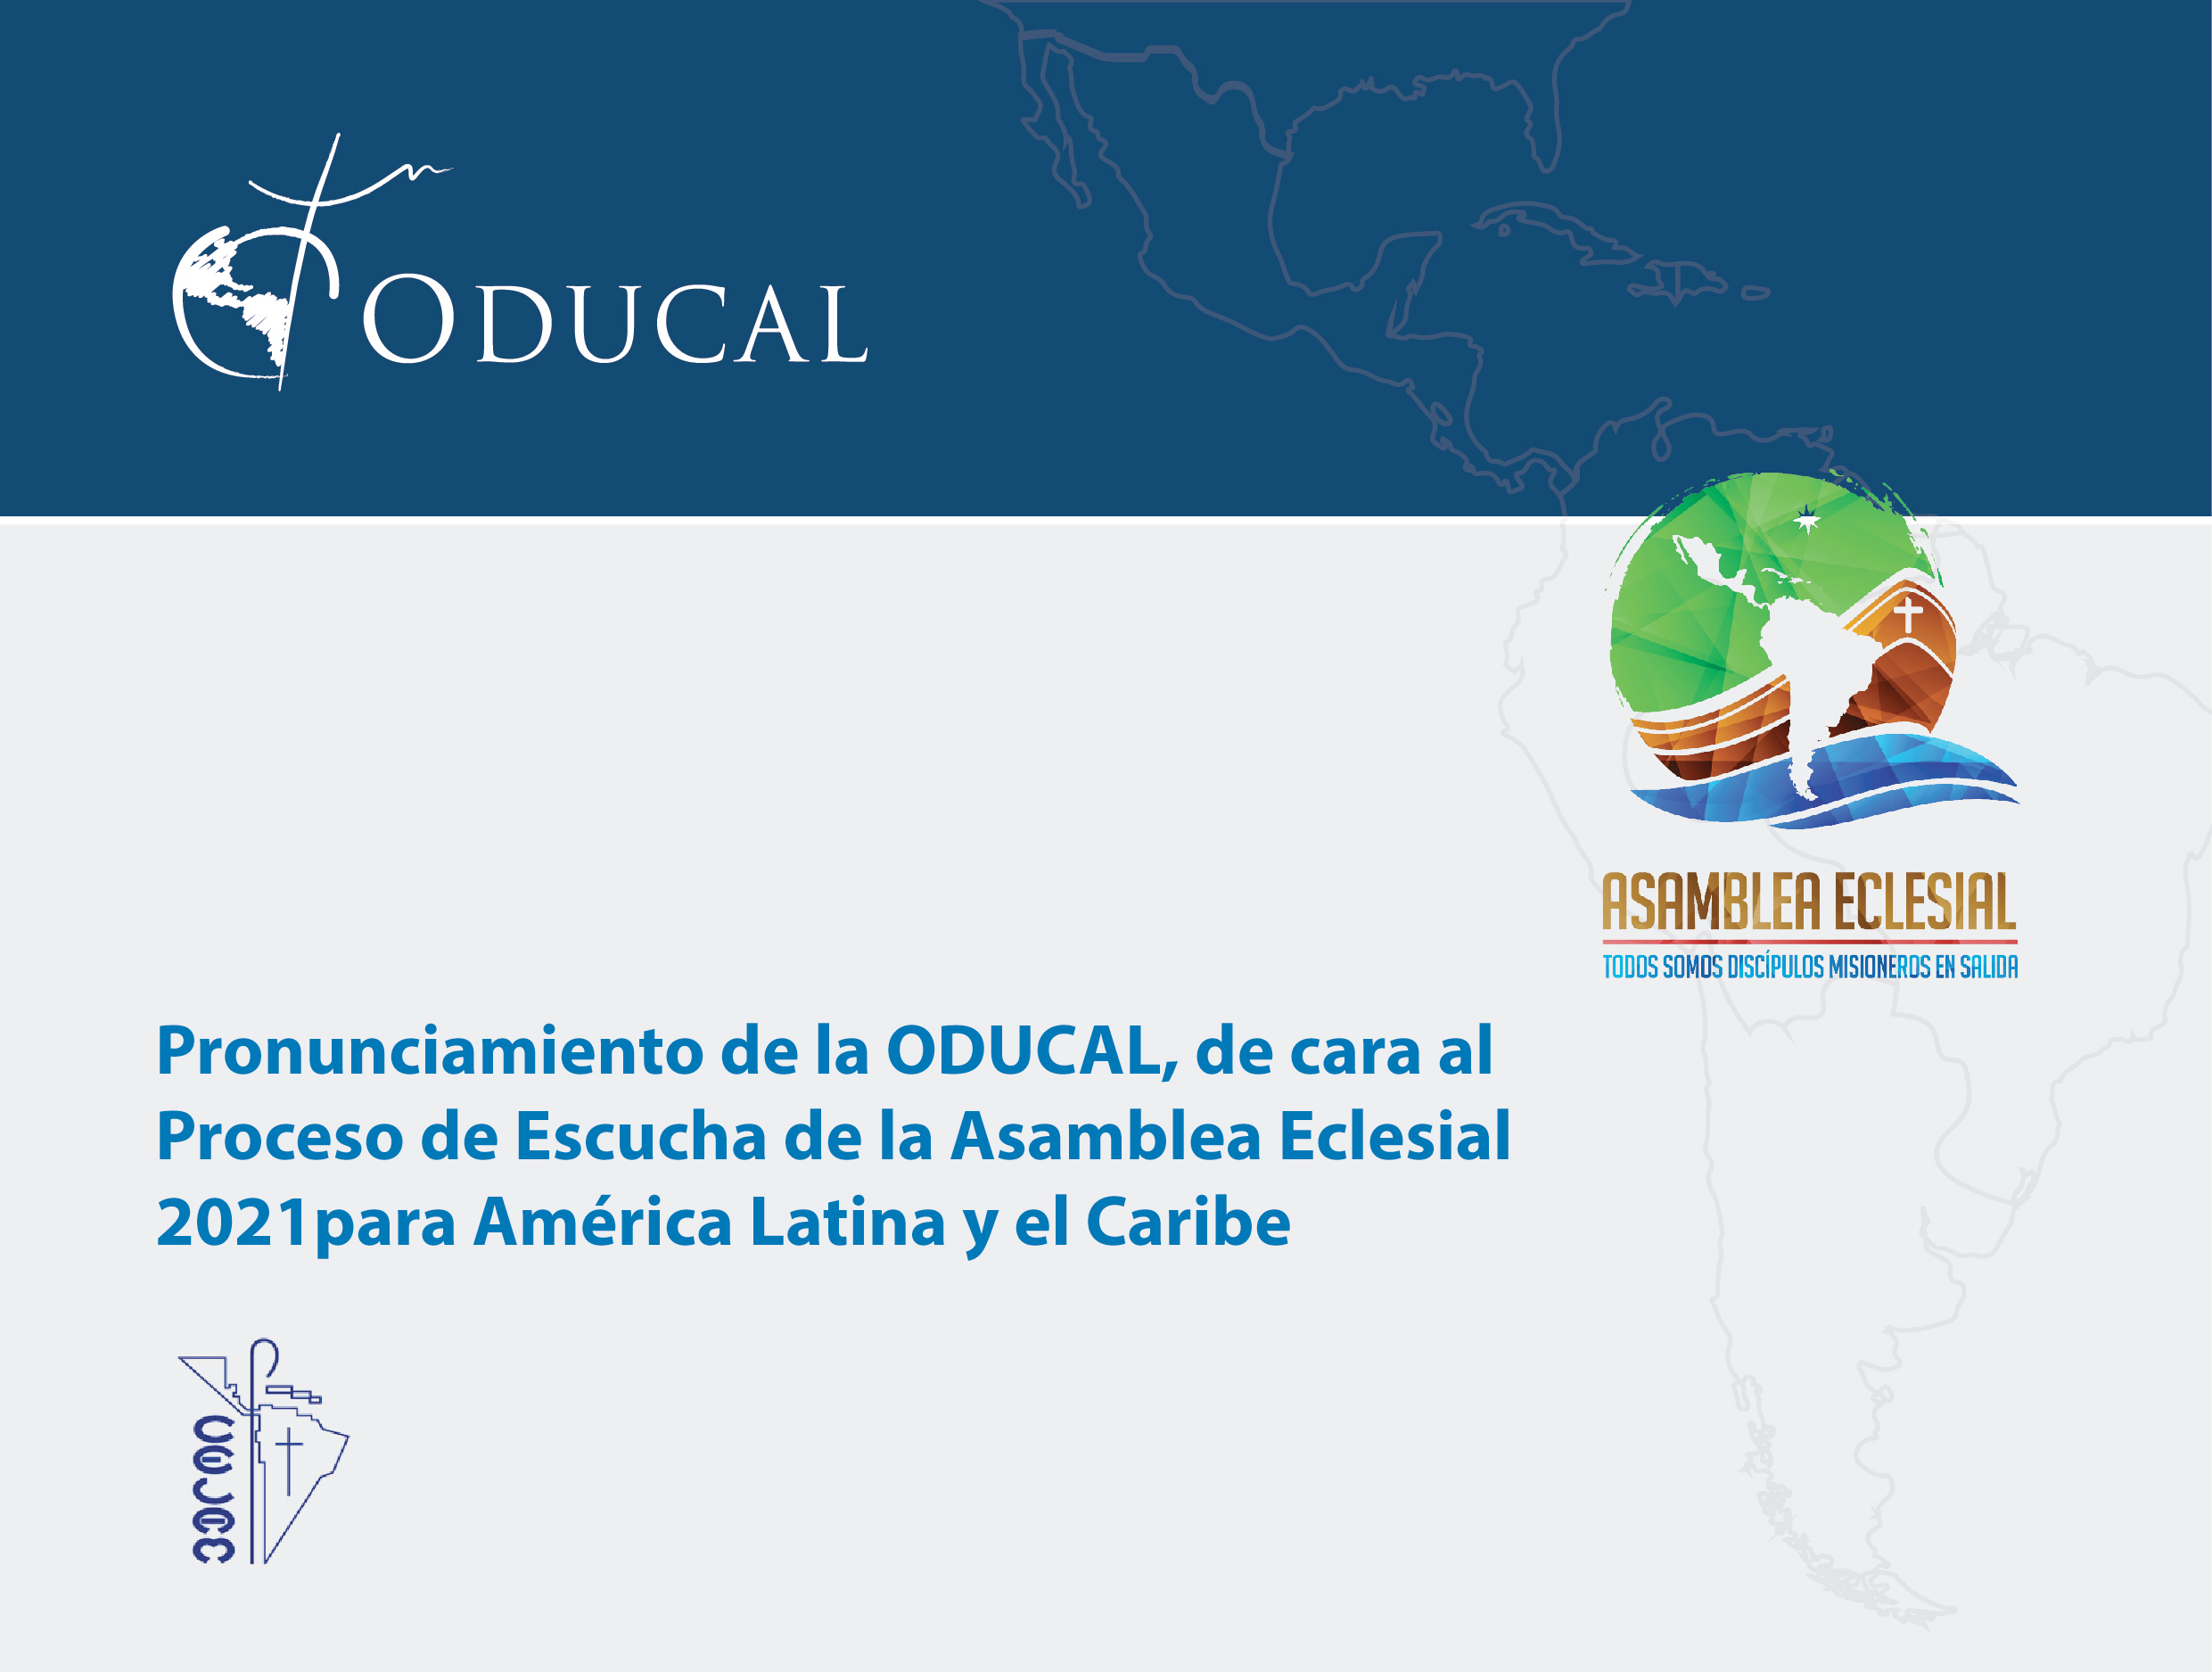 Pronunciamiento de la ODUCAL, de cara al Proceso de Escucha de la Asamblea Eclesial 2021 para América Latina y el Caribe